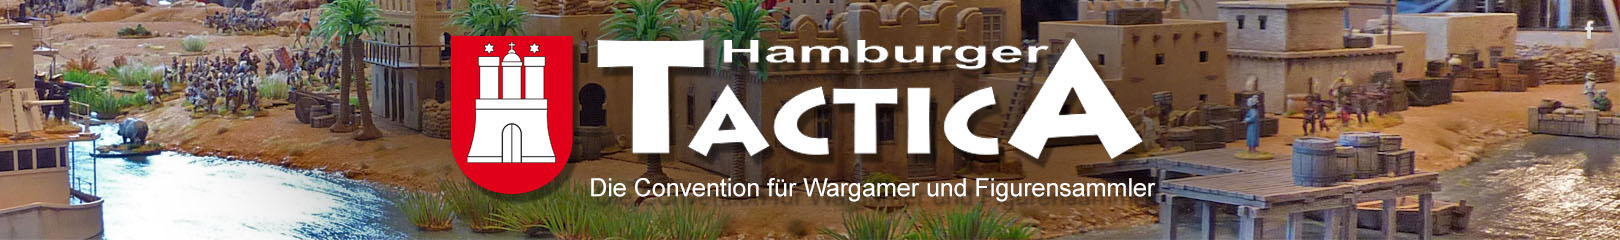 Hamburger Tactica 2020